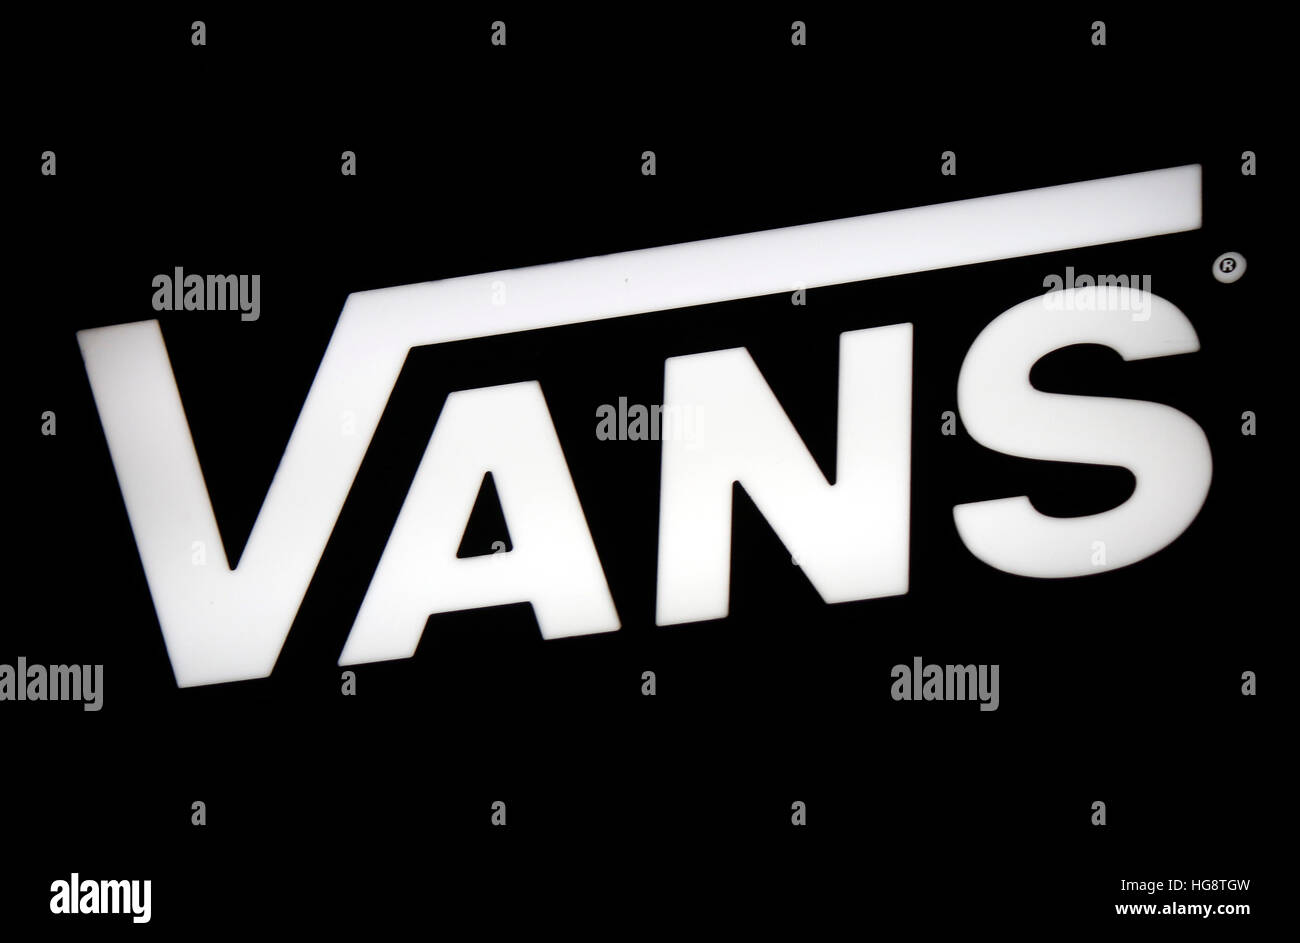 das Logo der Marke "Vans", Berlin Stock Photo - Alamy